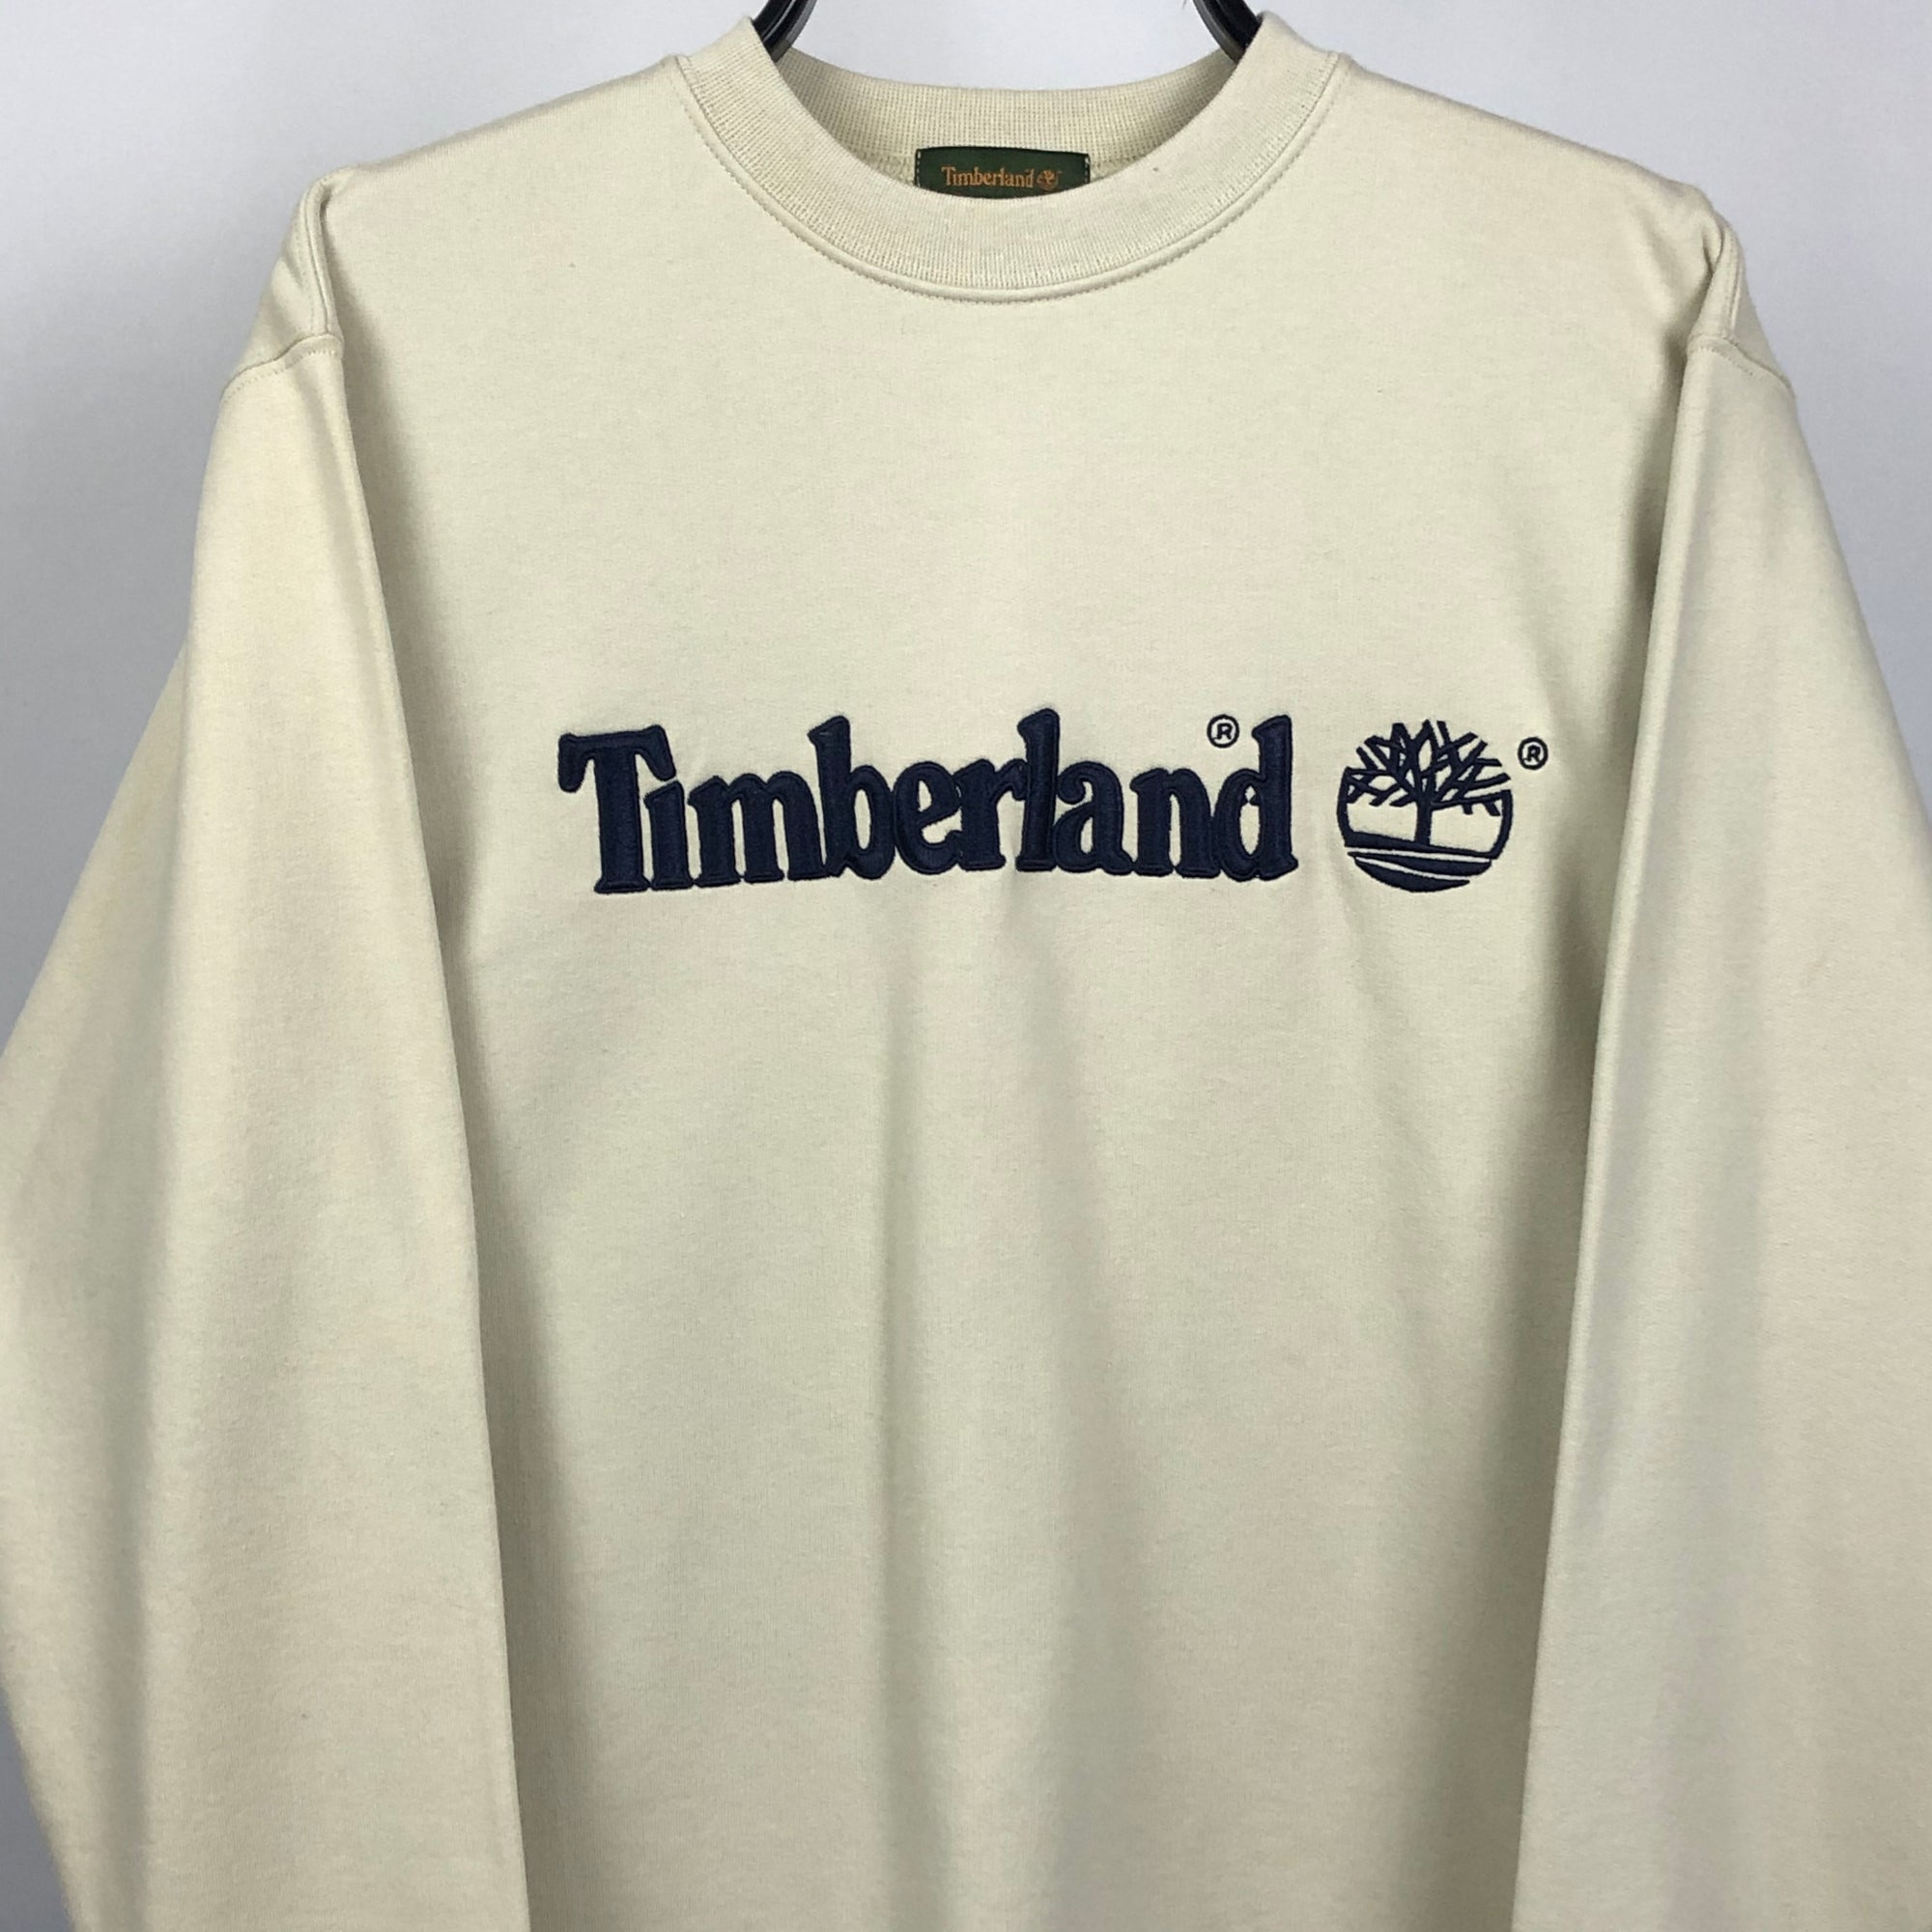 Timberland Spellout Sweatshirt in Beige - Men's Medium/Women's Large